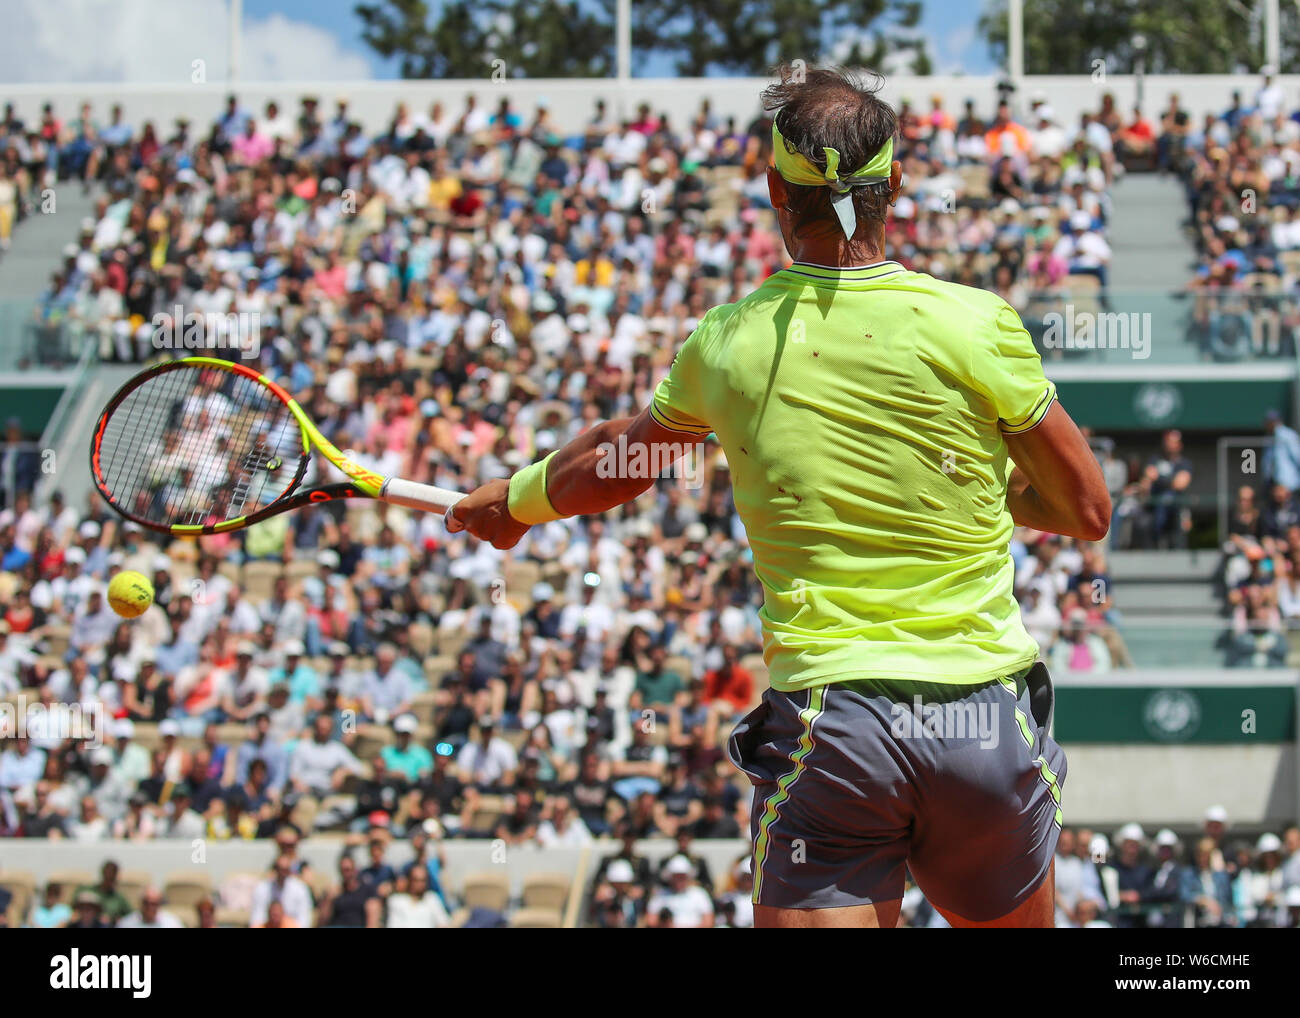 Spanischer Tennisspieler Rafael Nadal spielen Vorhand Schuß während der French Open 2019, Paris, Frankreich Stockfoto